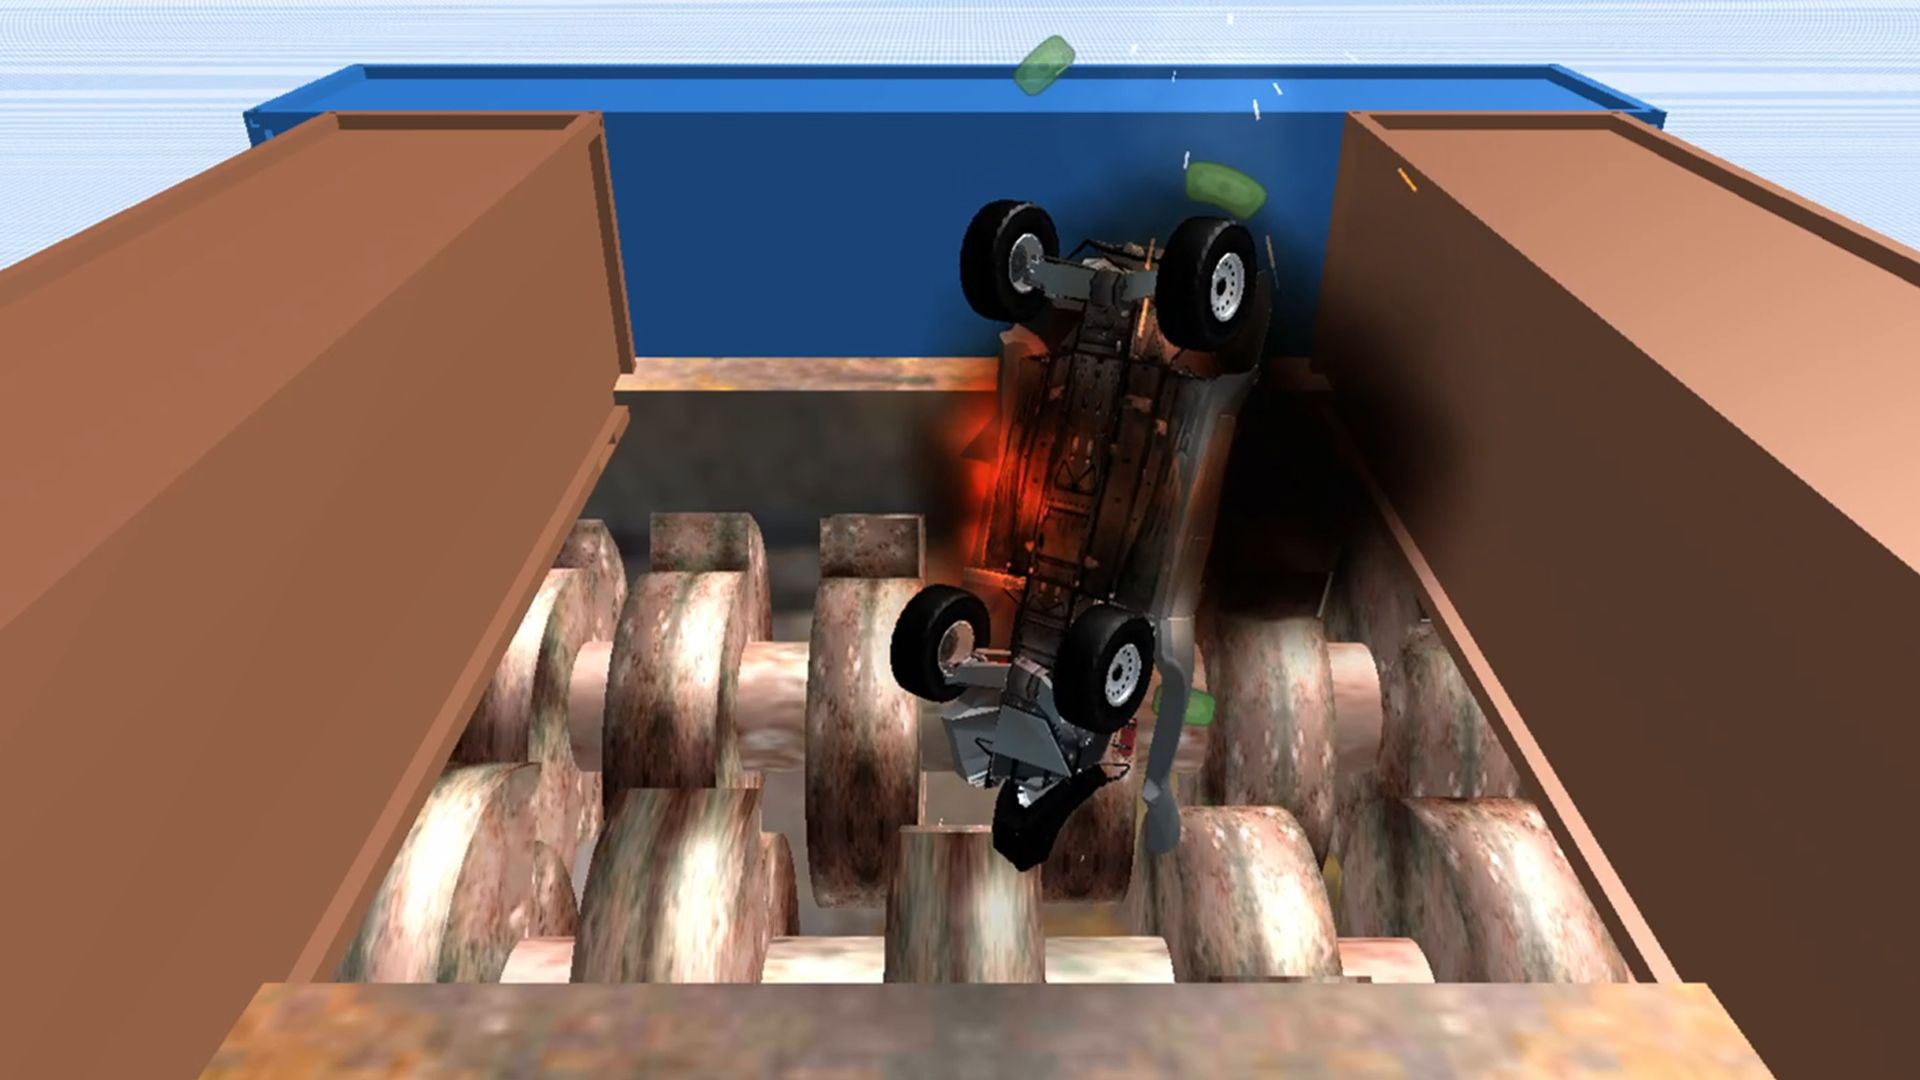 Car Crash Simulator Game 3D - Android game screenshots.